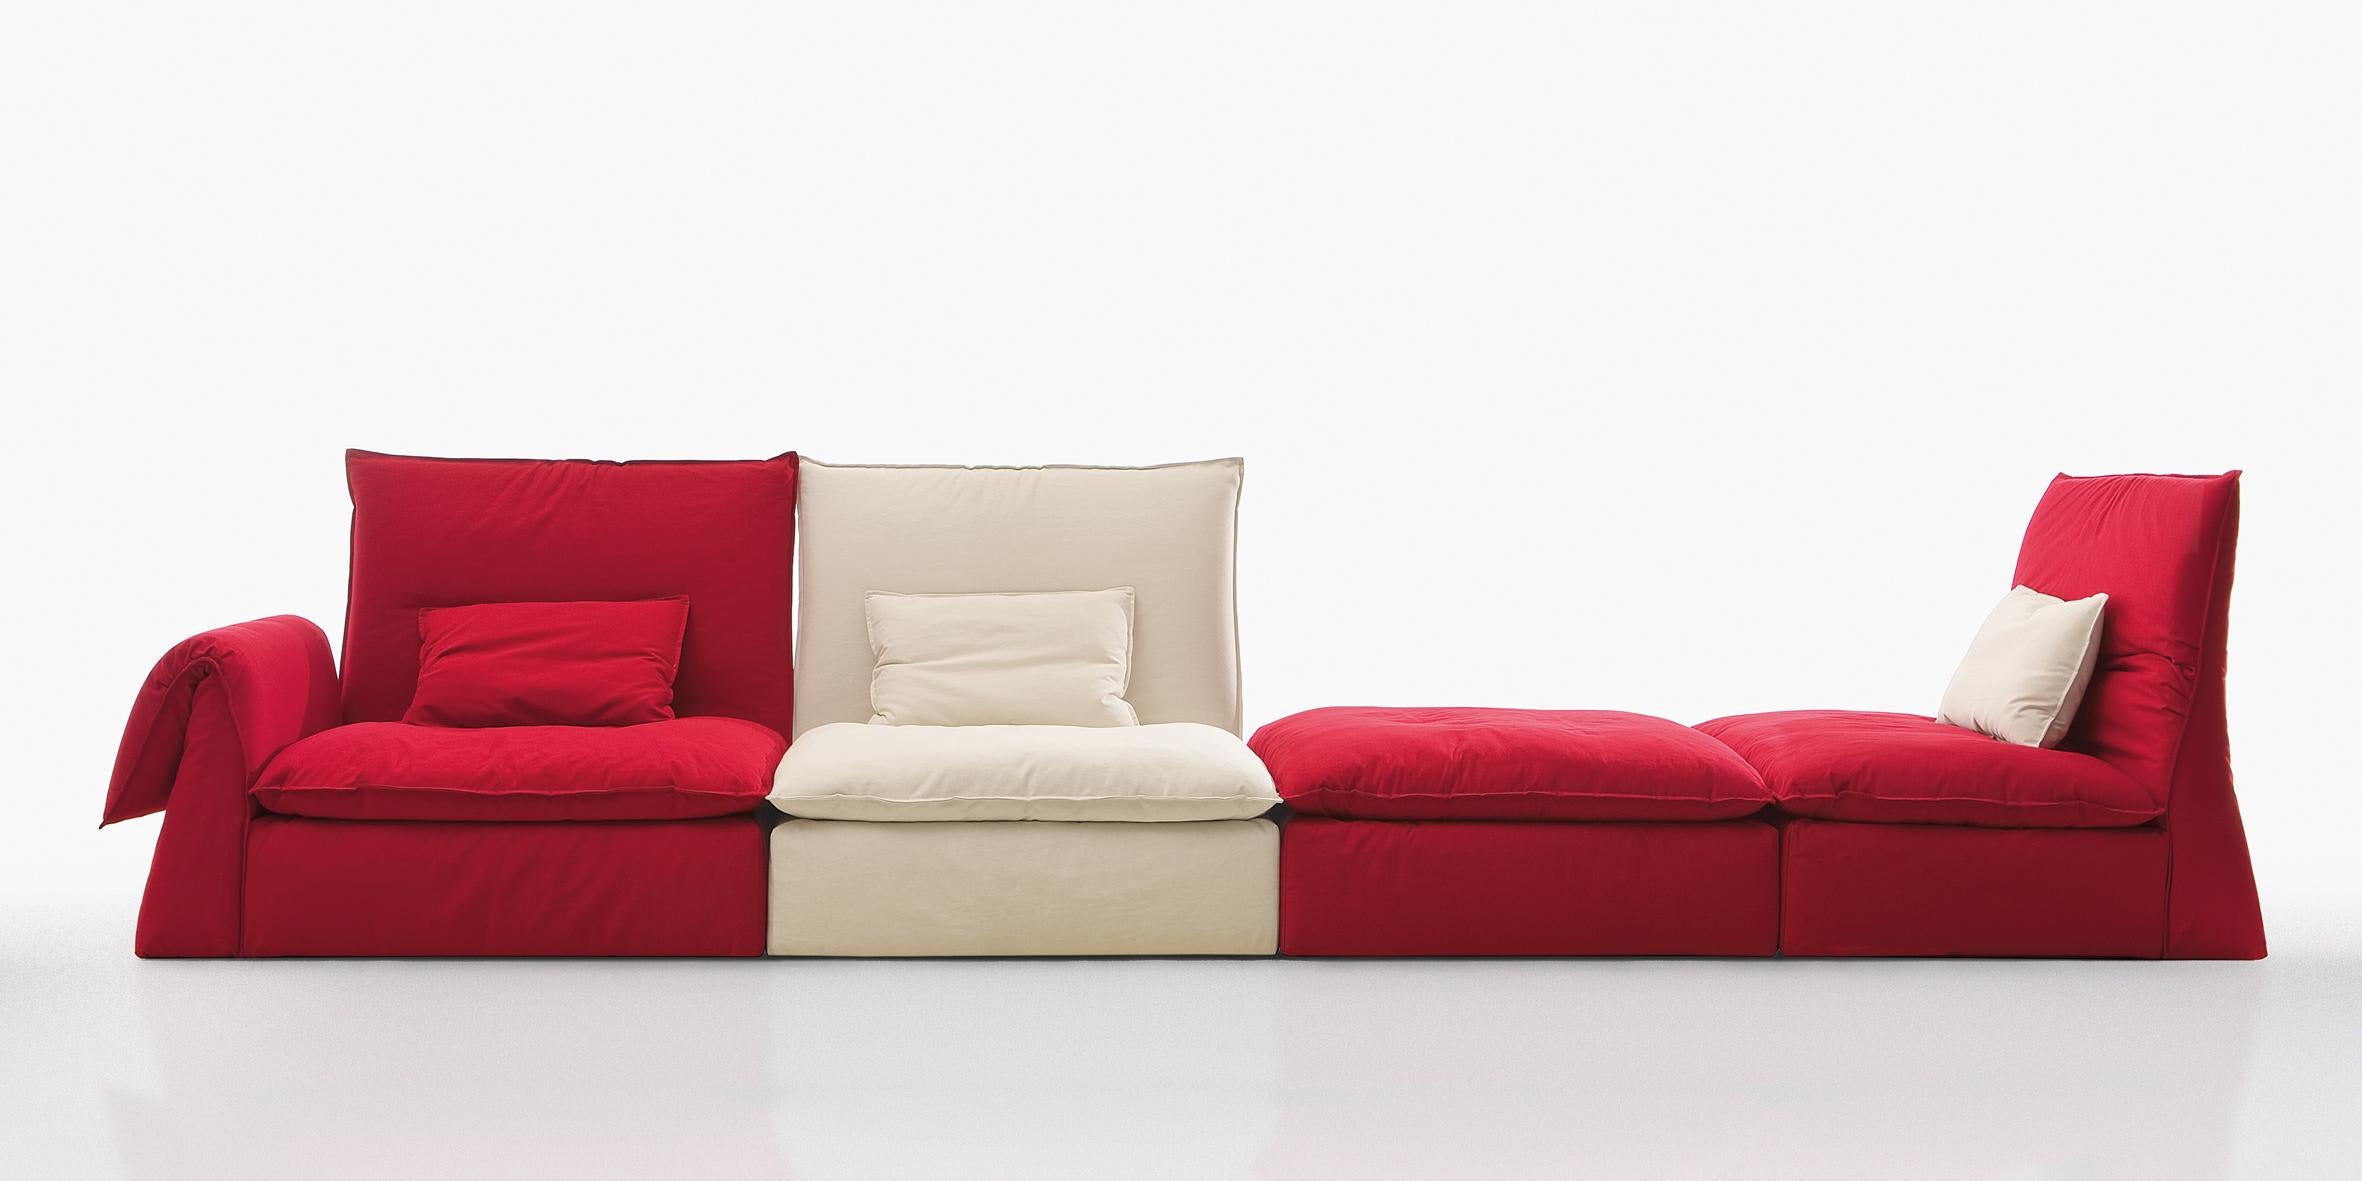 Les Femmes ist eine innovative modulare Couch mit hoher Rückenlehne und bequemer Sitzfläche, die sich durch ihre weiche, umhüllende Form auszeichnet. Die originelle Gestaltung mit nur drei Elementen ermöglicht eine Vielzahl von Arrangements.